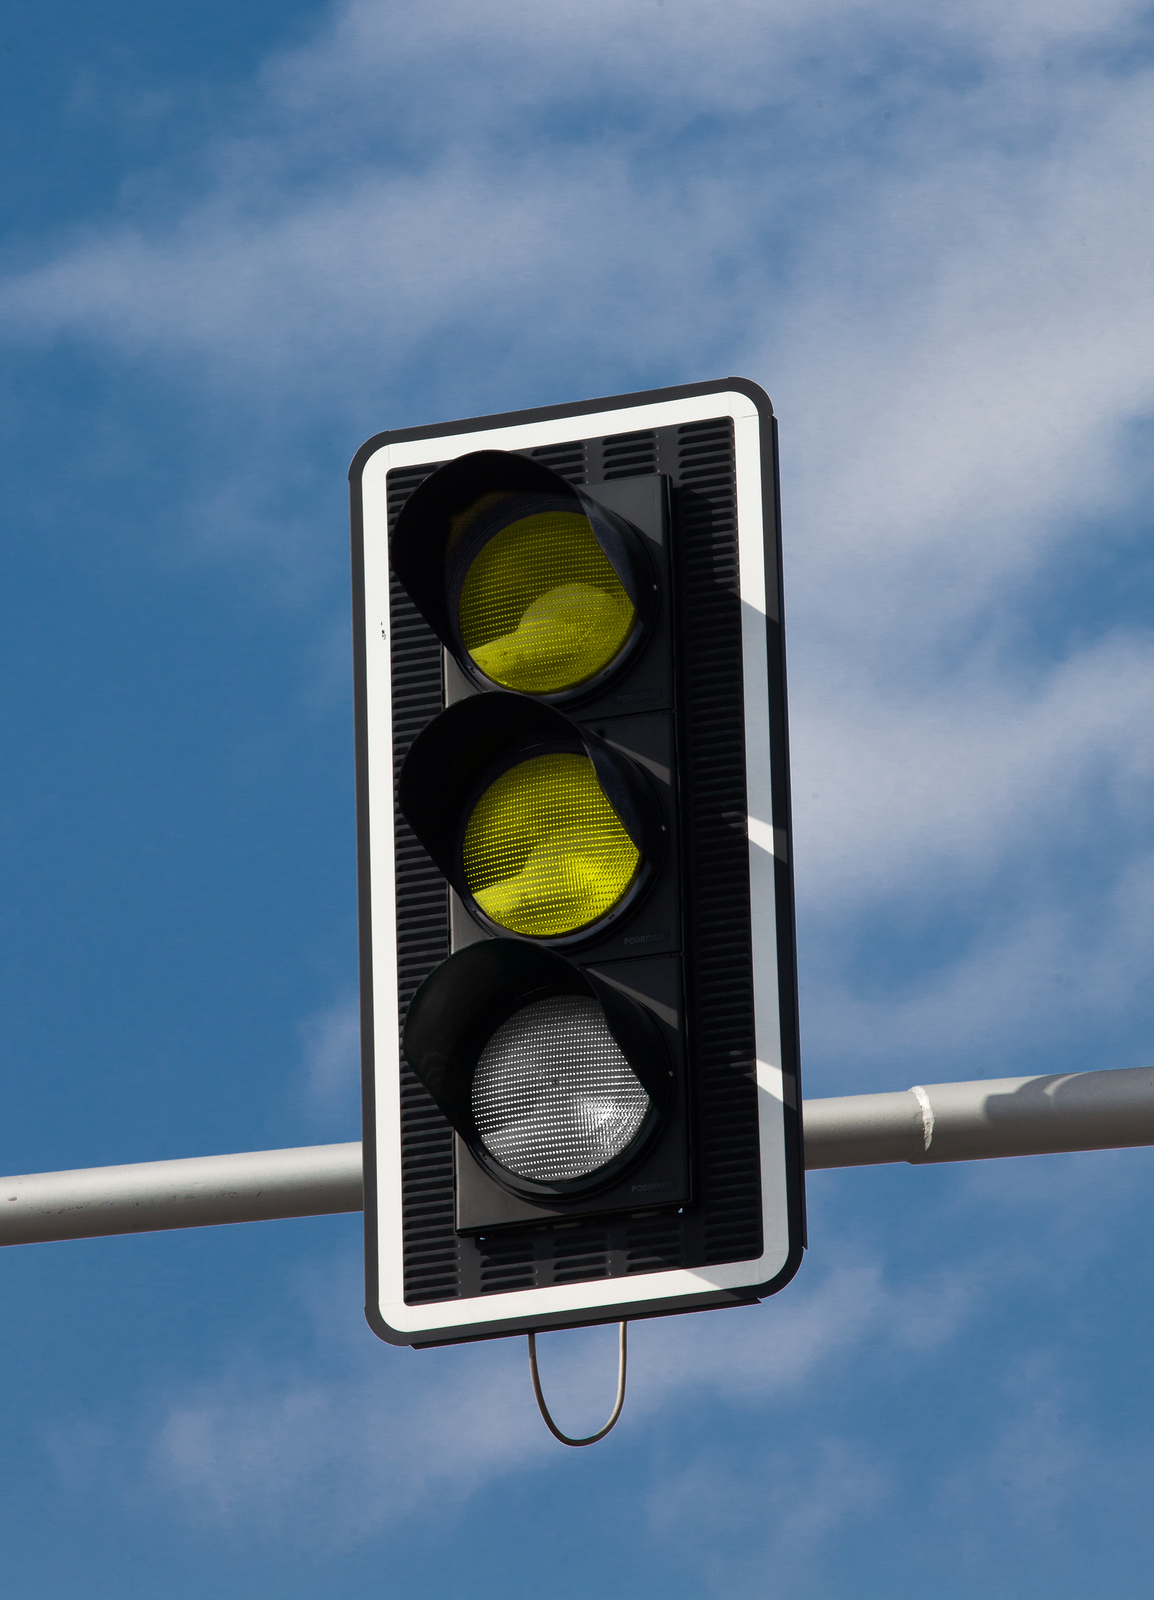 Zdjęcie 2: Światła uliczne - dwa żółte